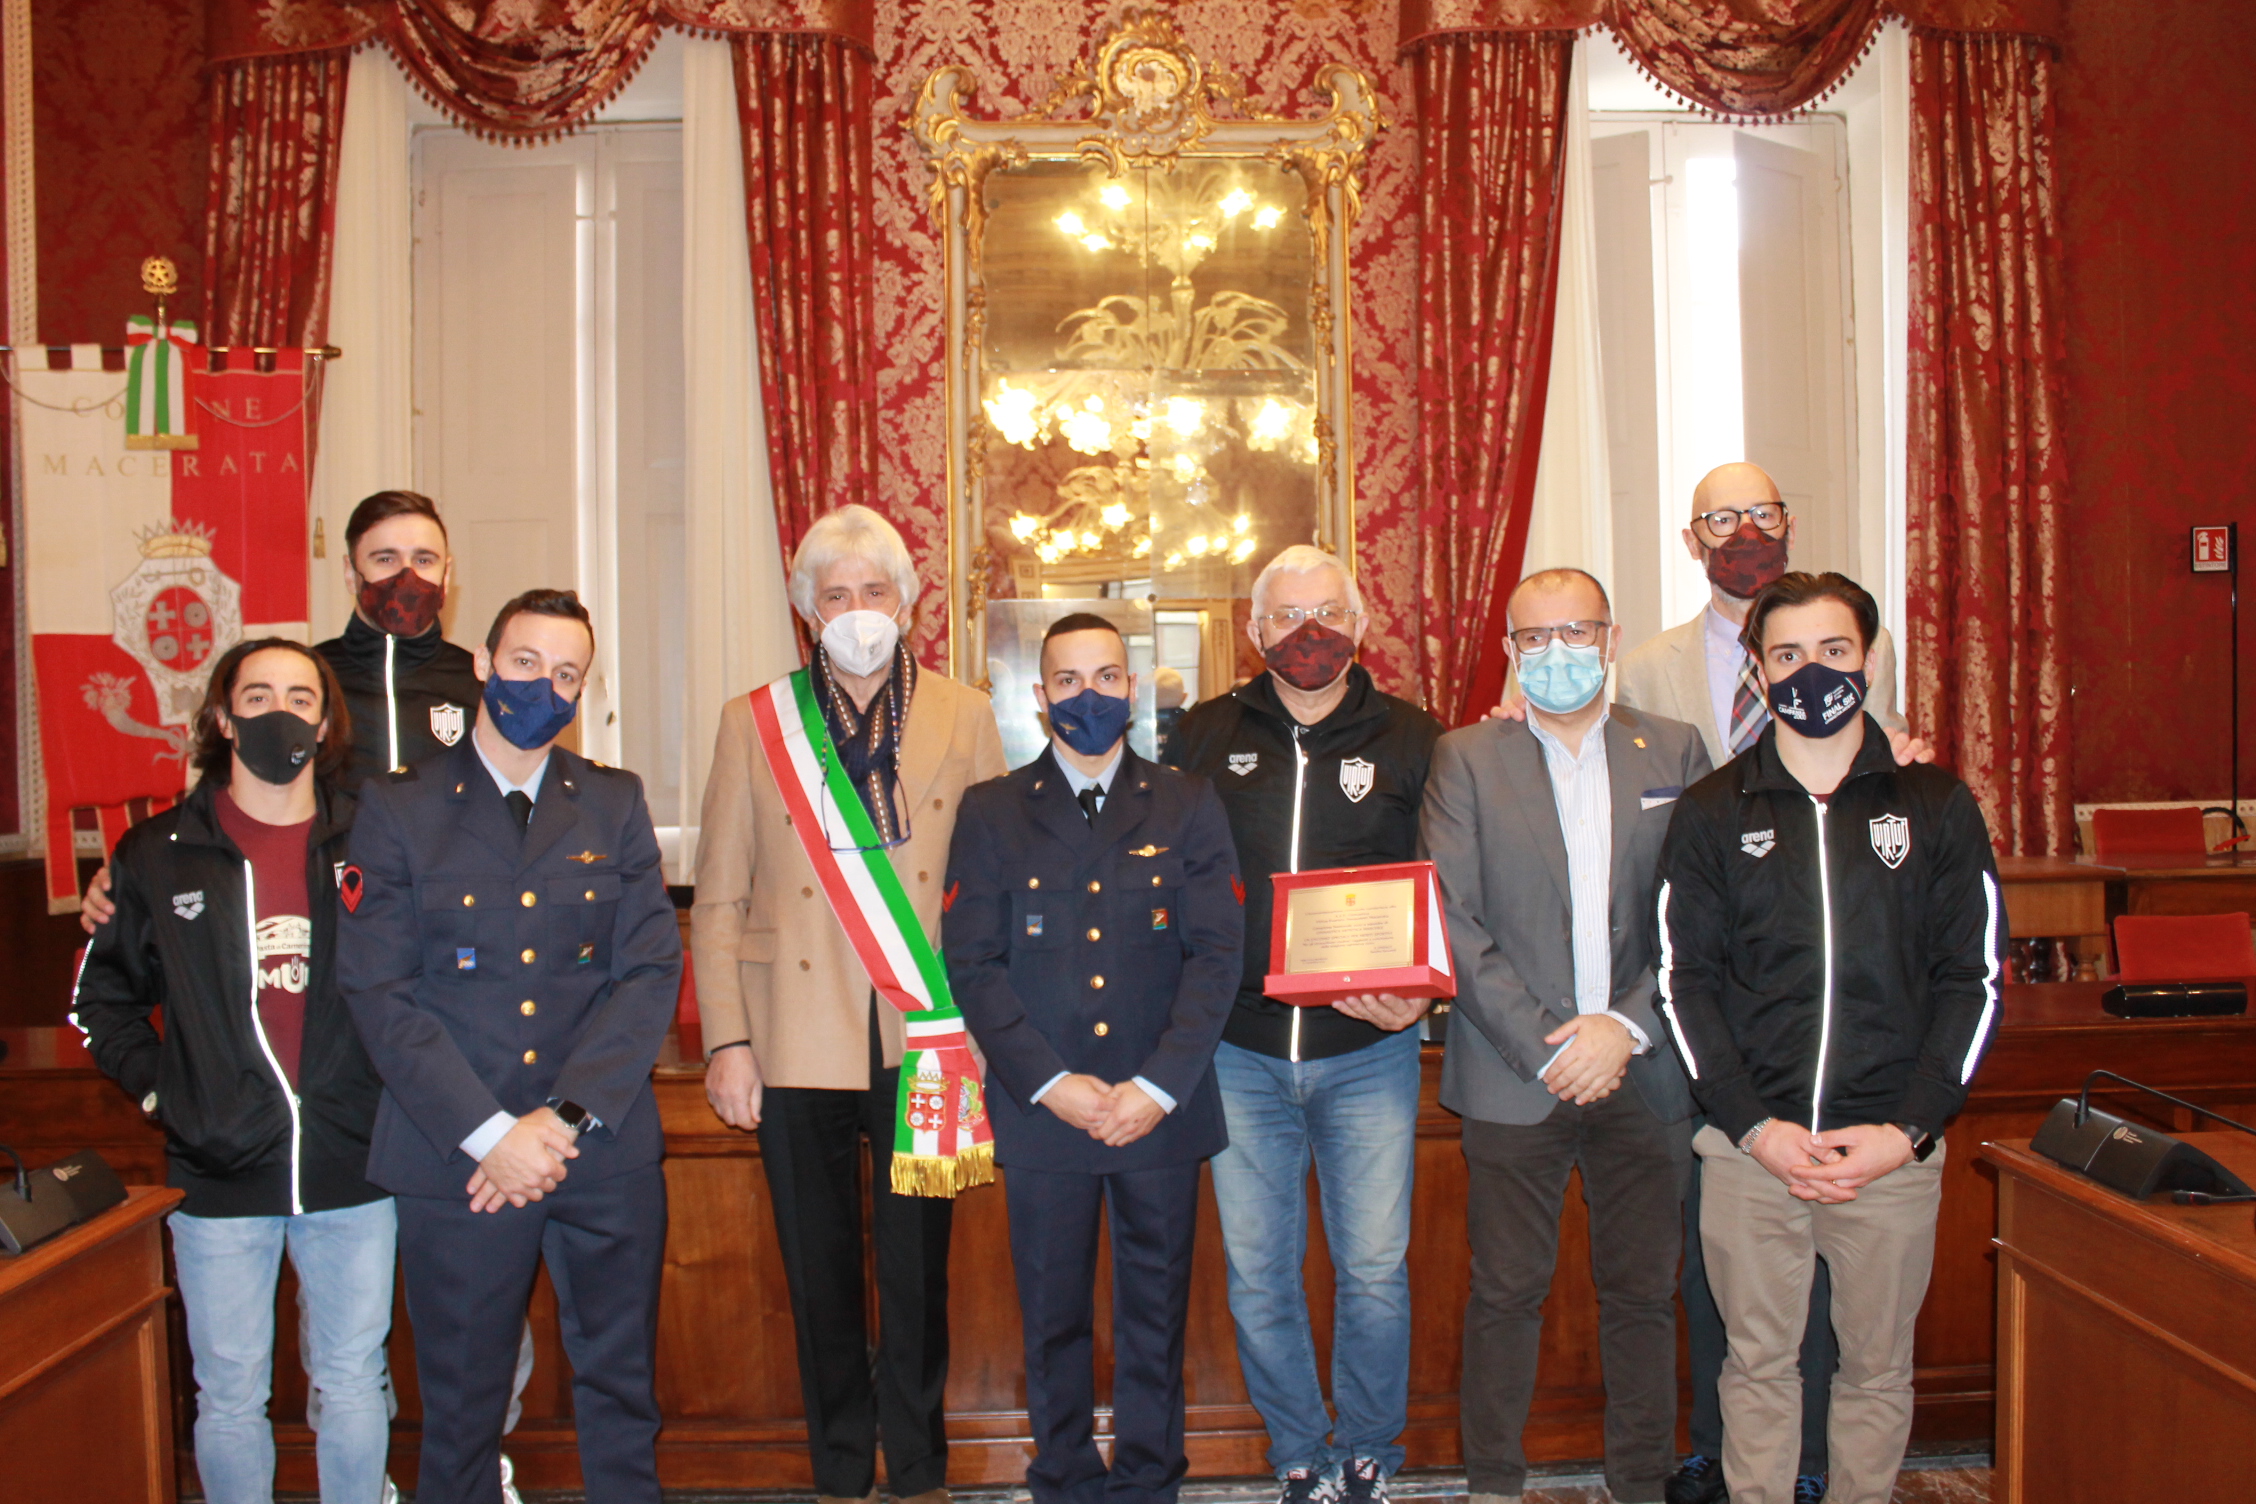 La Virtus Macerata Campione d’Italia ricevuta in Municipio